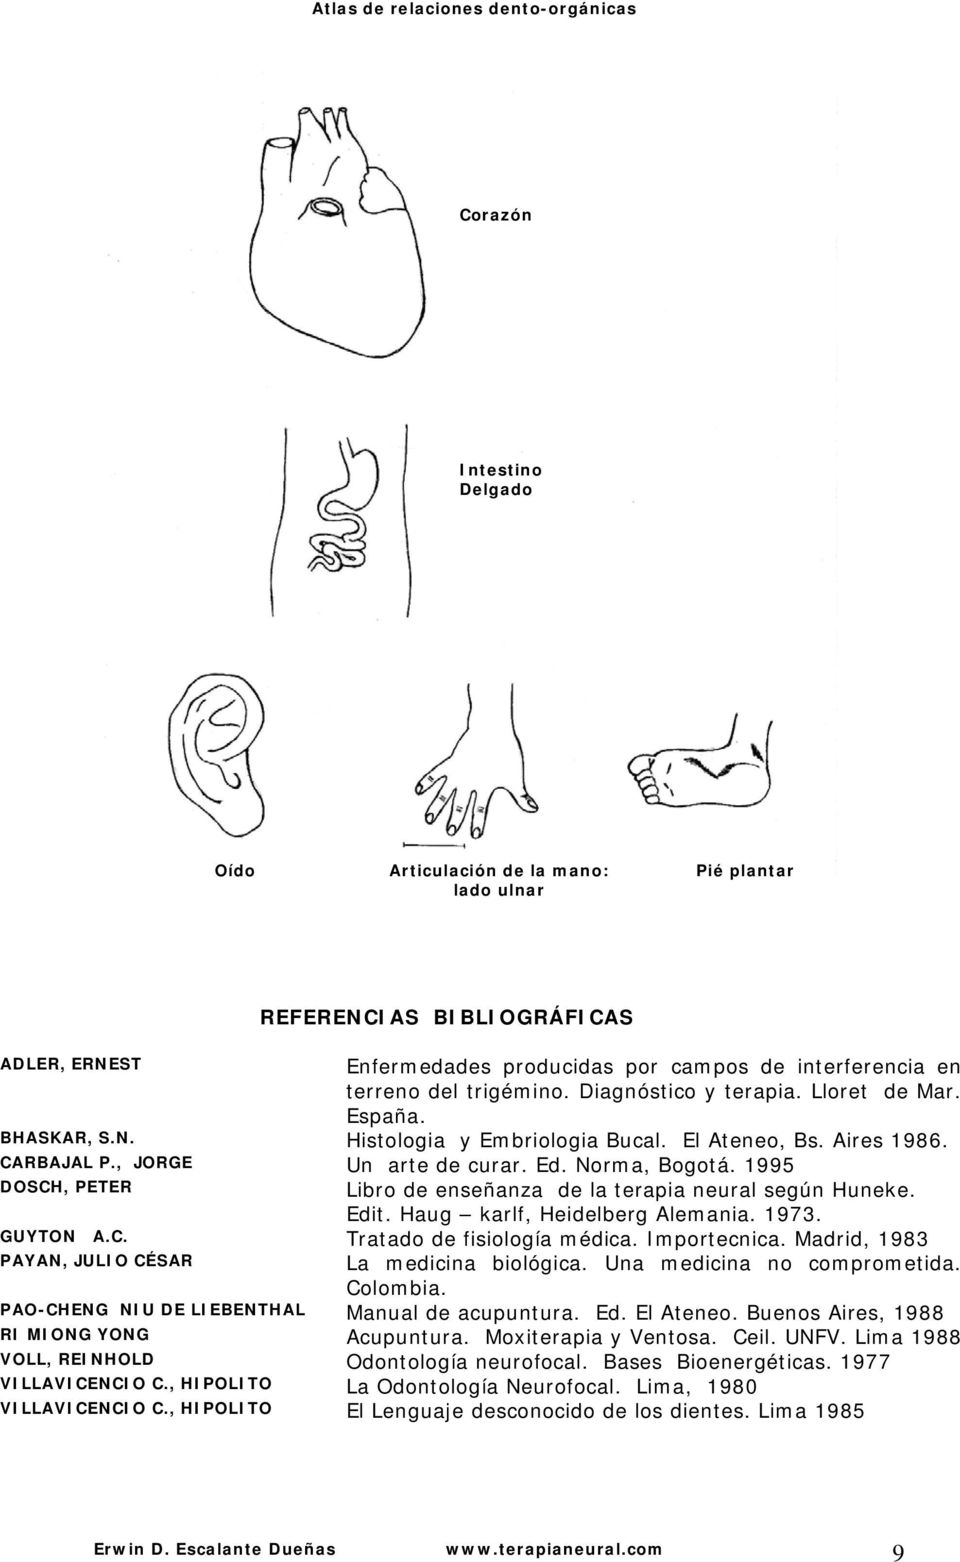 1995 DOSCH, PETER Libro de enseñanza de la terapia neural según Huneke. Edit. Haug karlf, Heidelberg Alemania. 1973. GUYTON A.C. Tratado de fisiología médica. Importecnica.